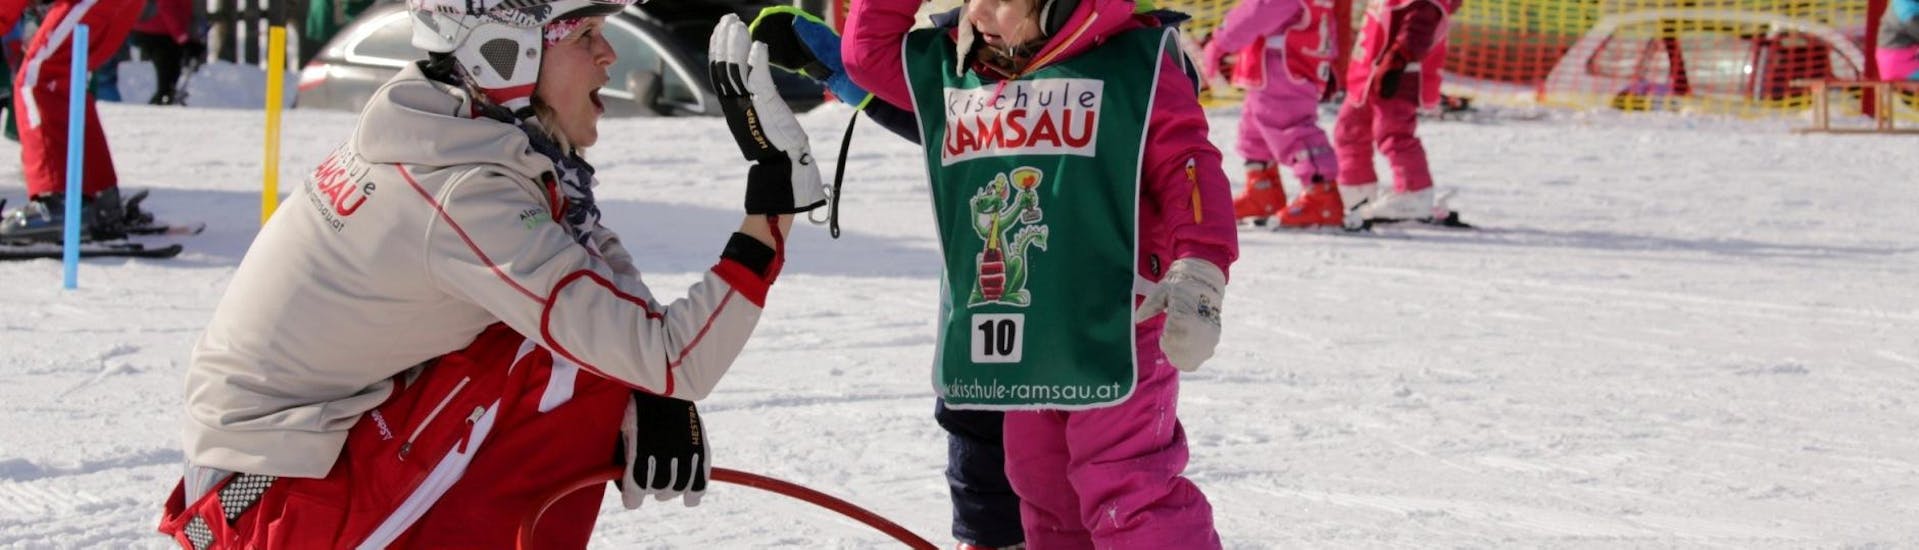 Cours de ski Enfants dès 3 ans pour Tous niveaux avec Skischule Ramsau.